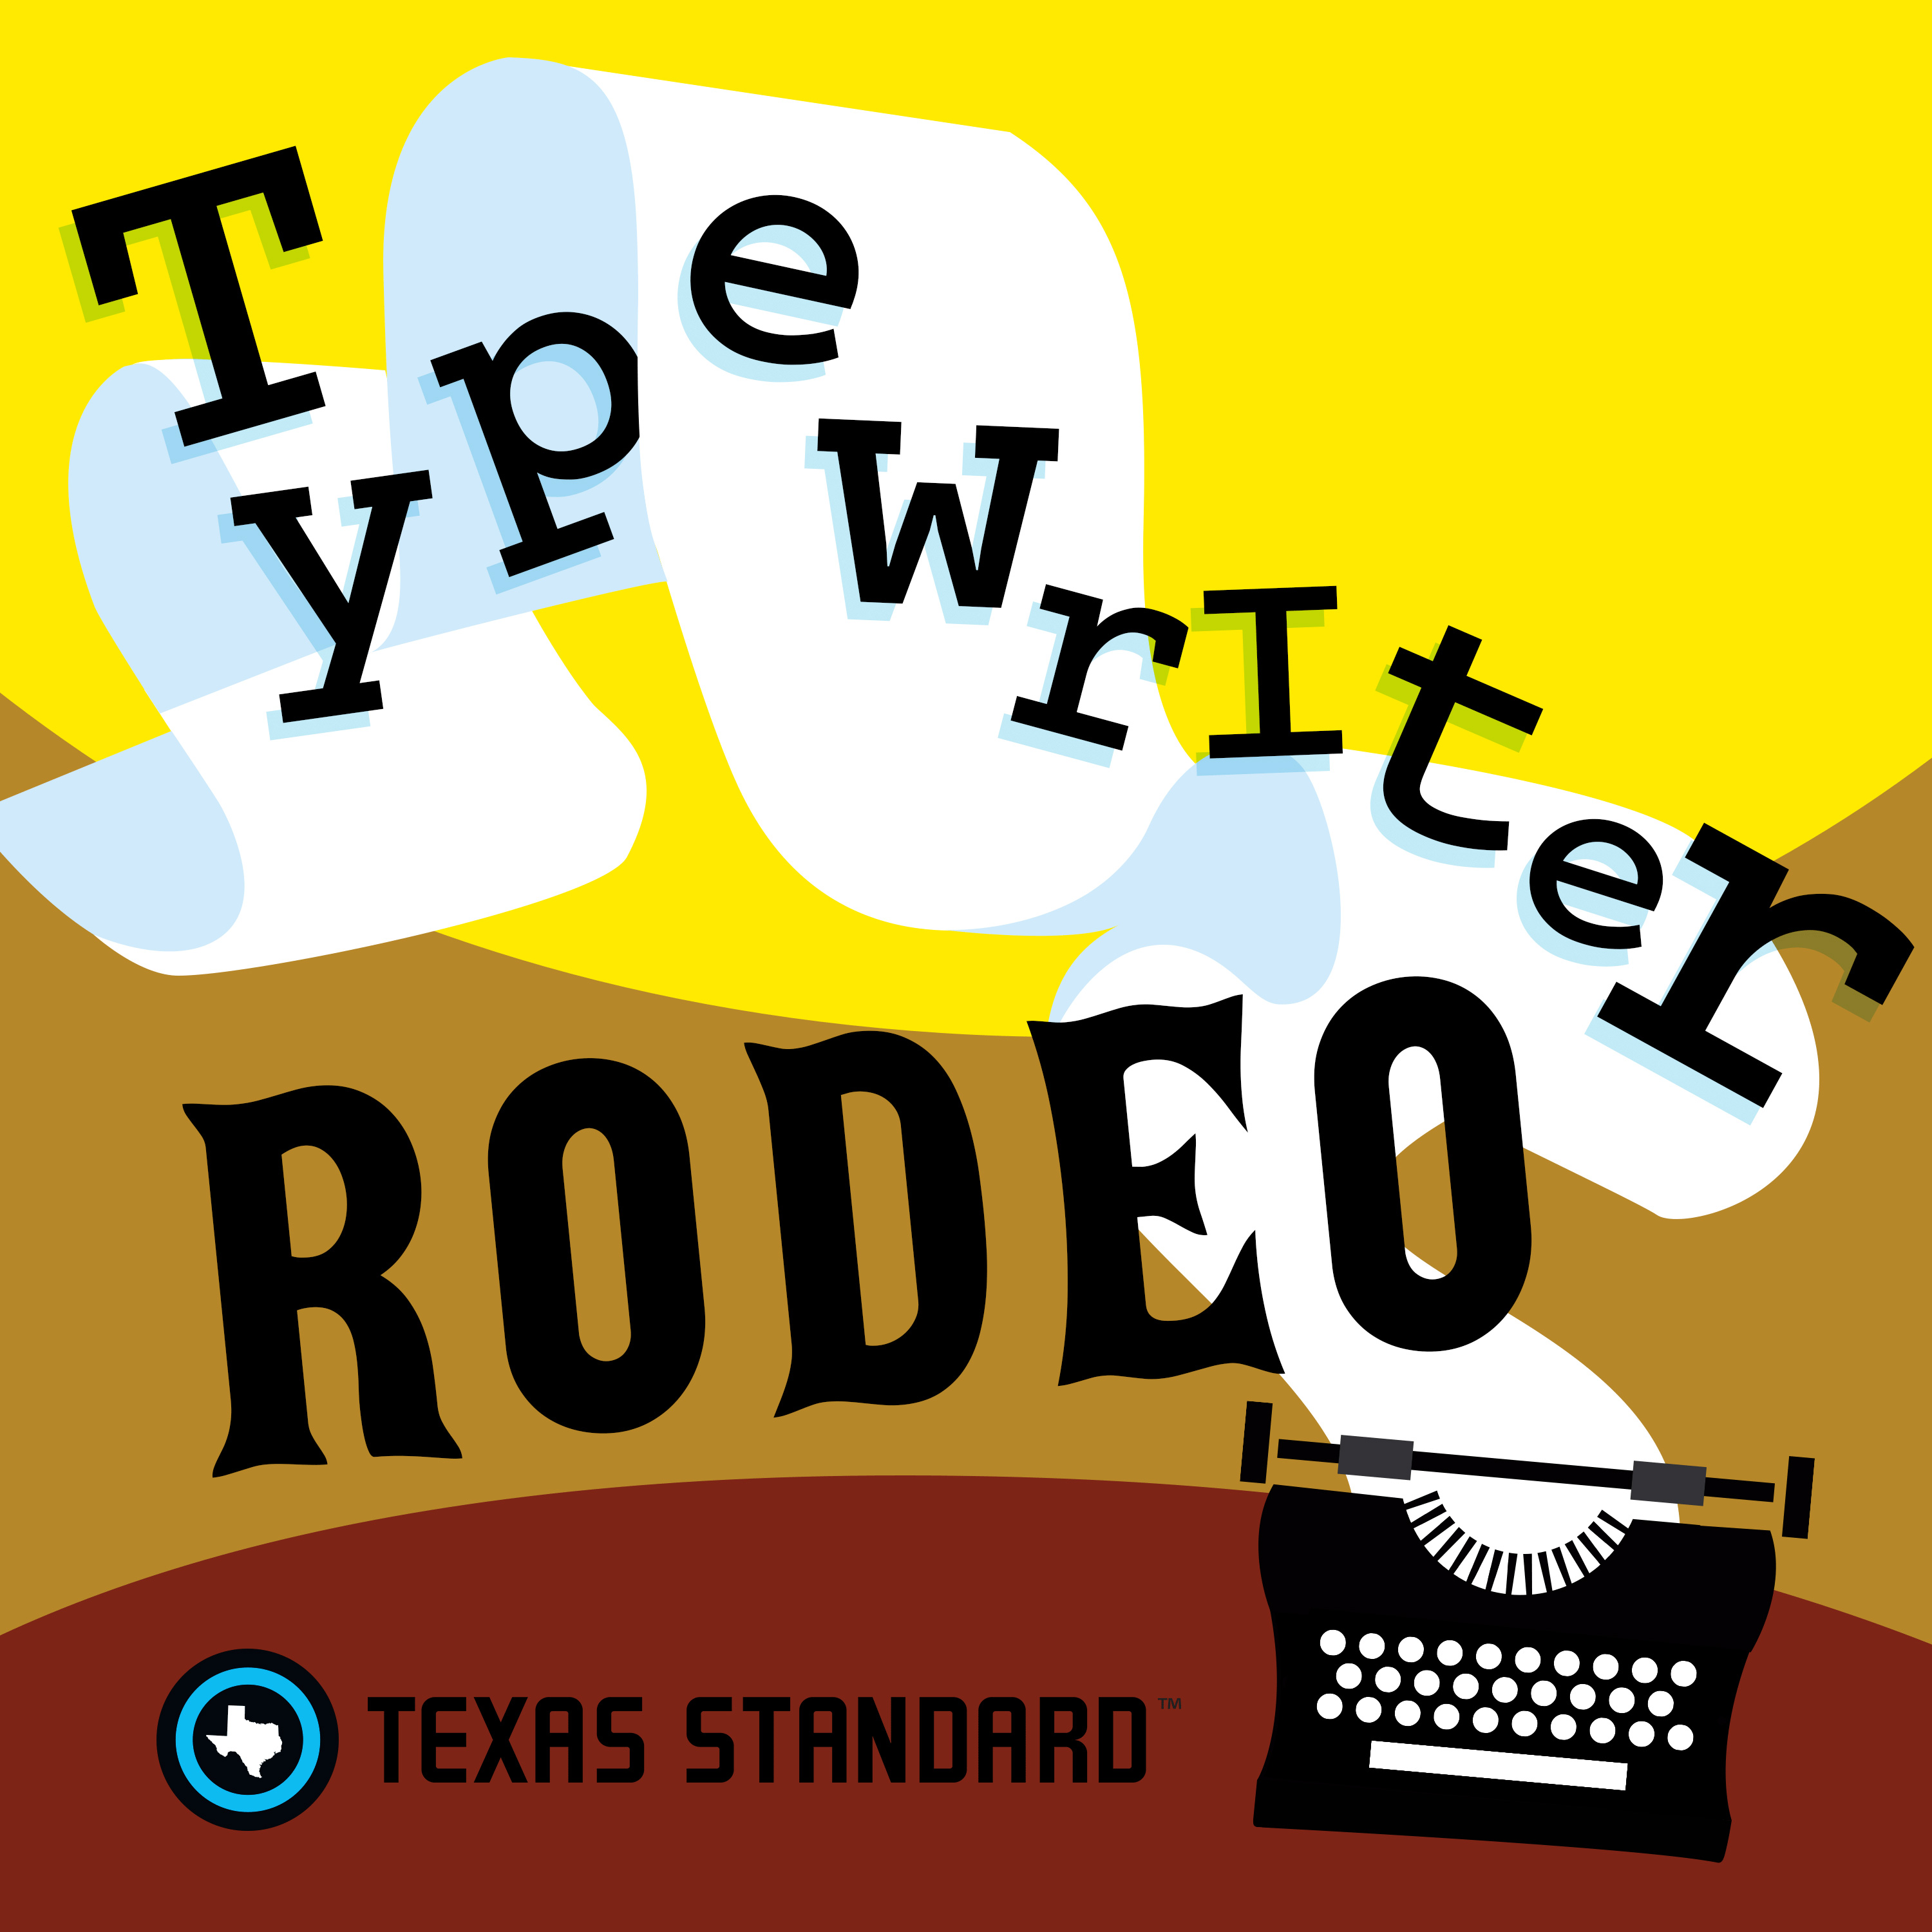 Texas Standard » Typewriter Rodeo